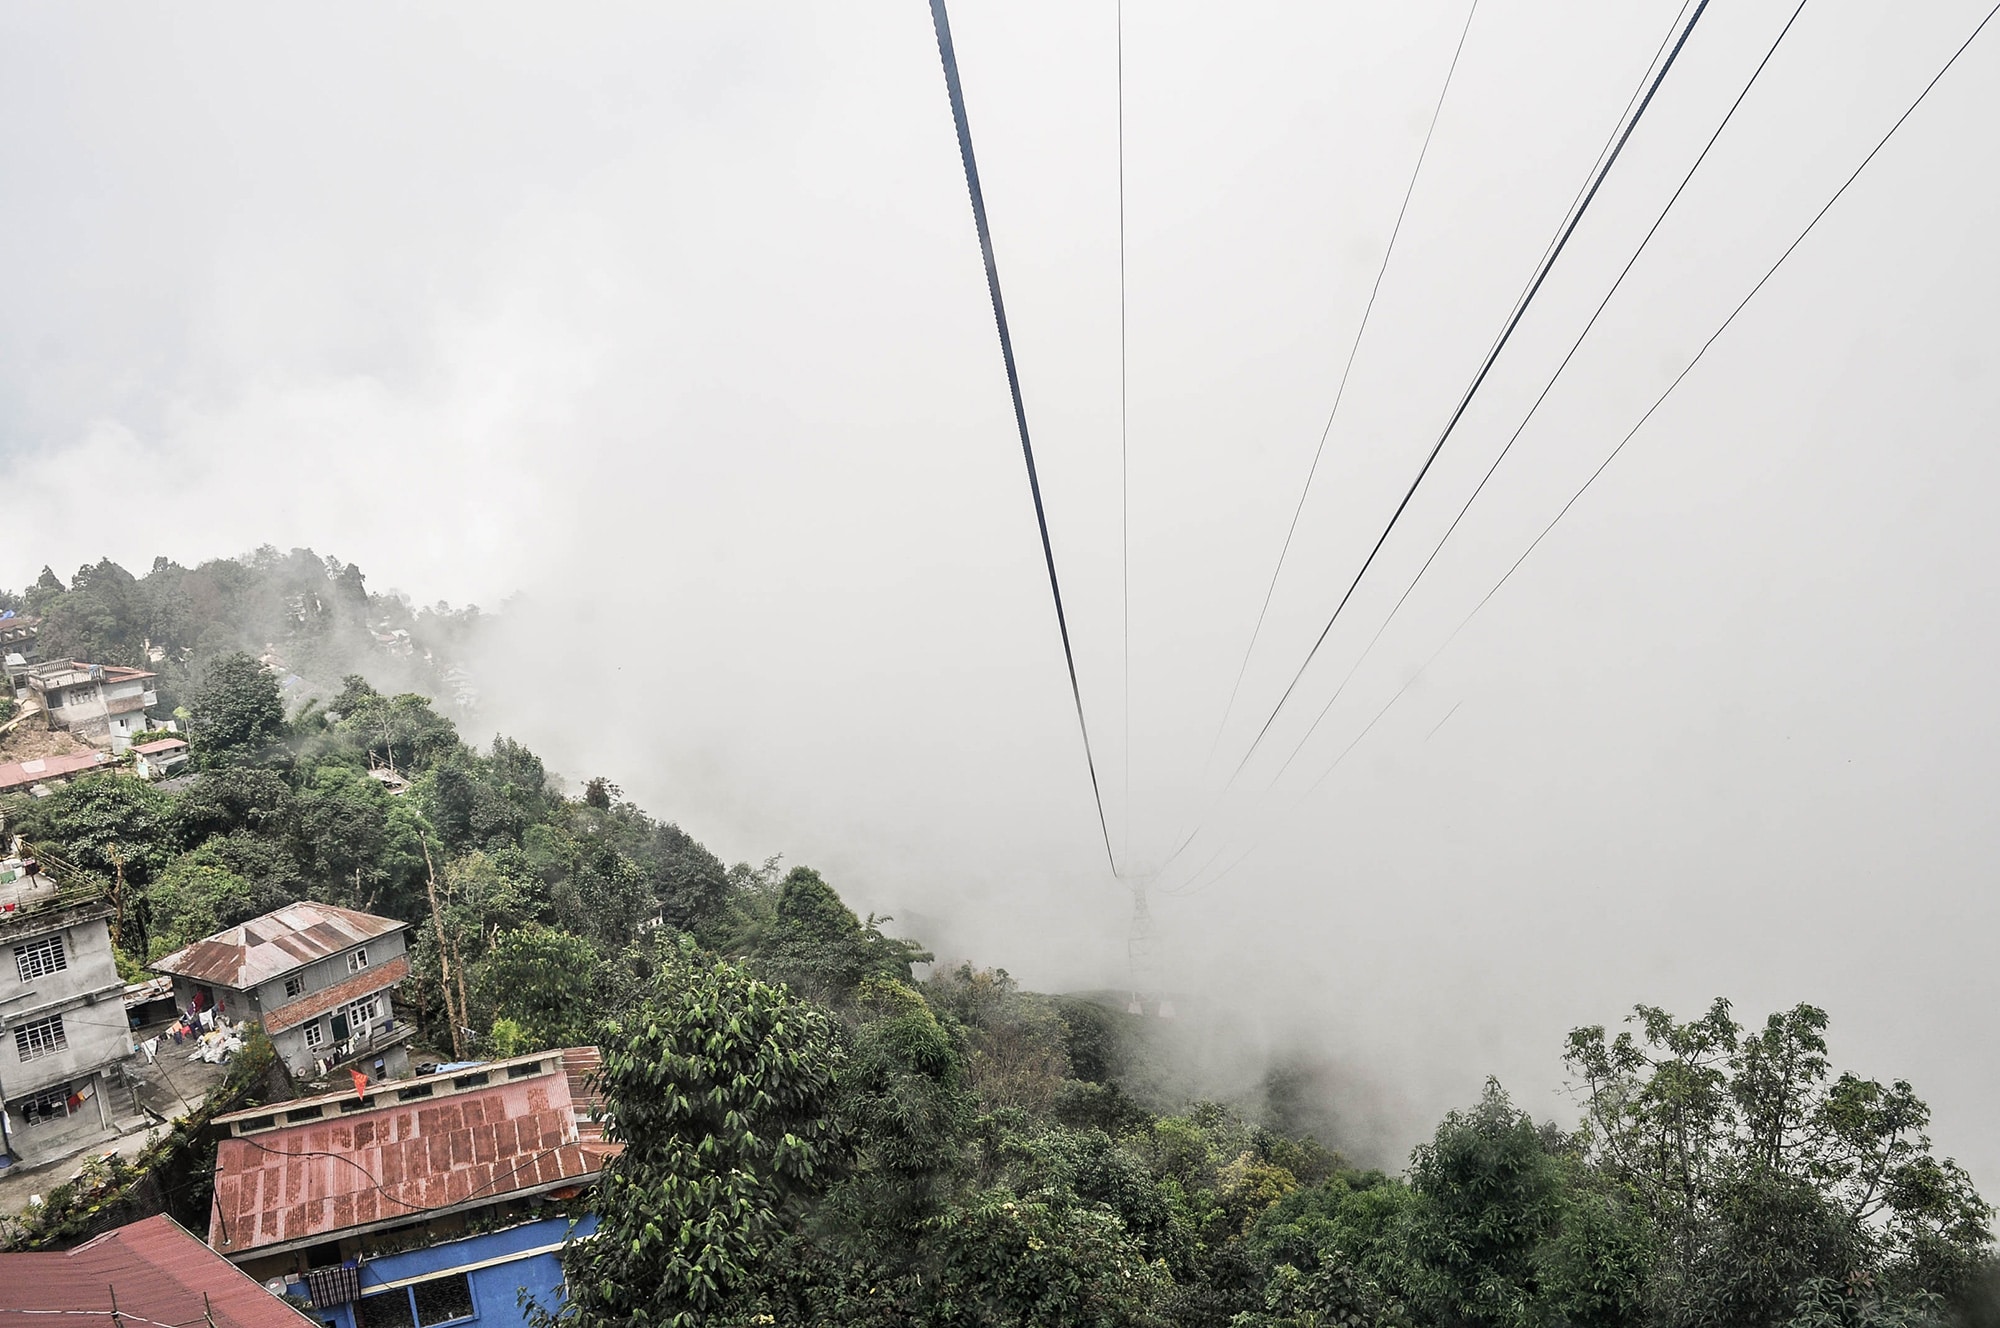 Le téléphérique à Darjeeling en Inde